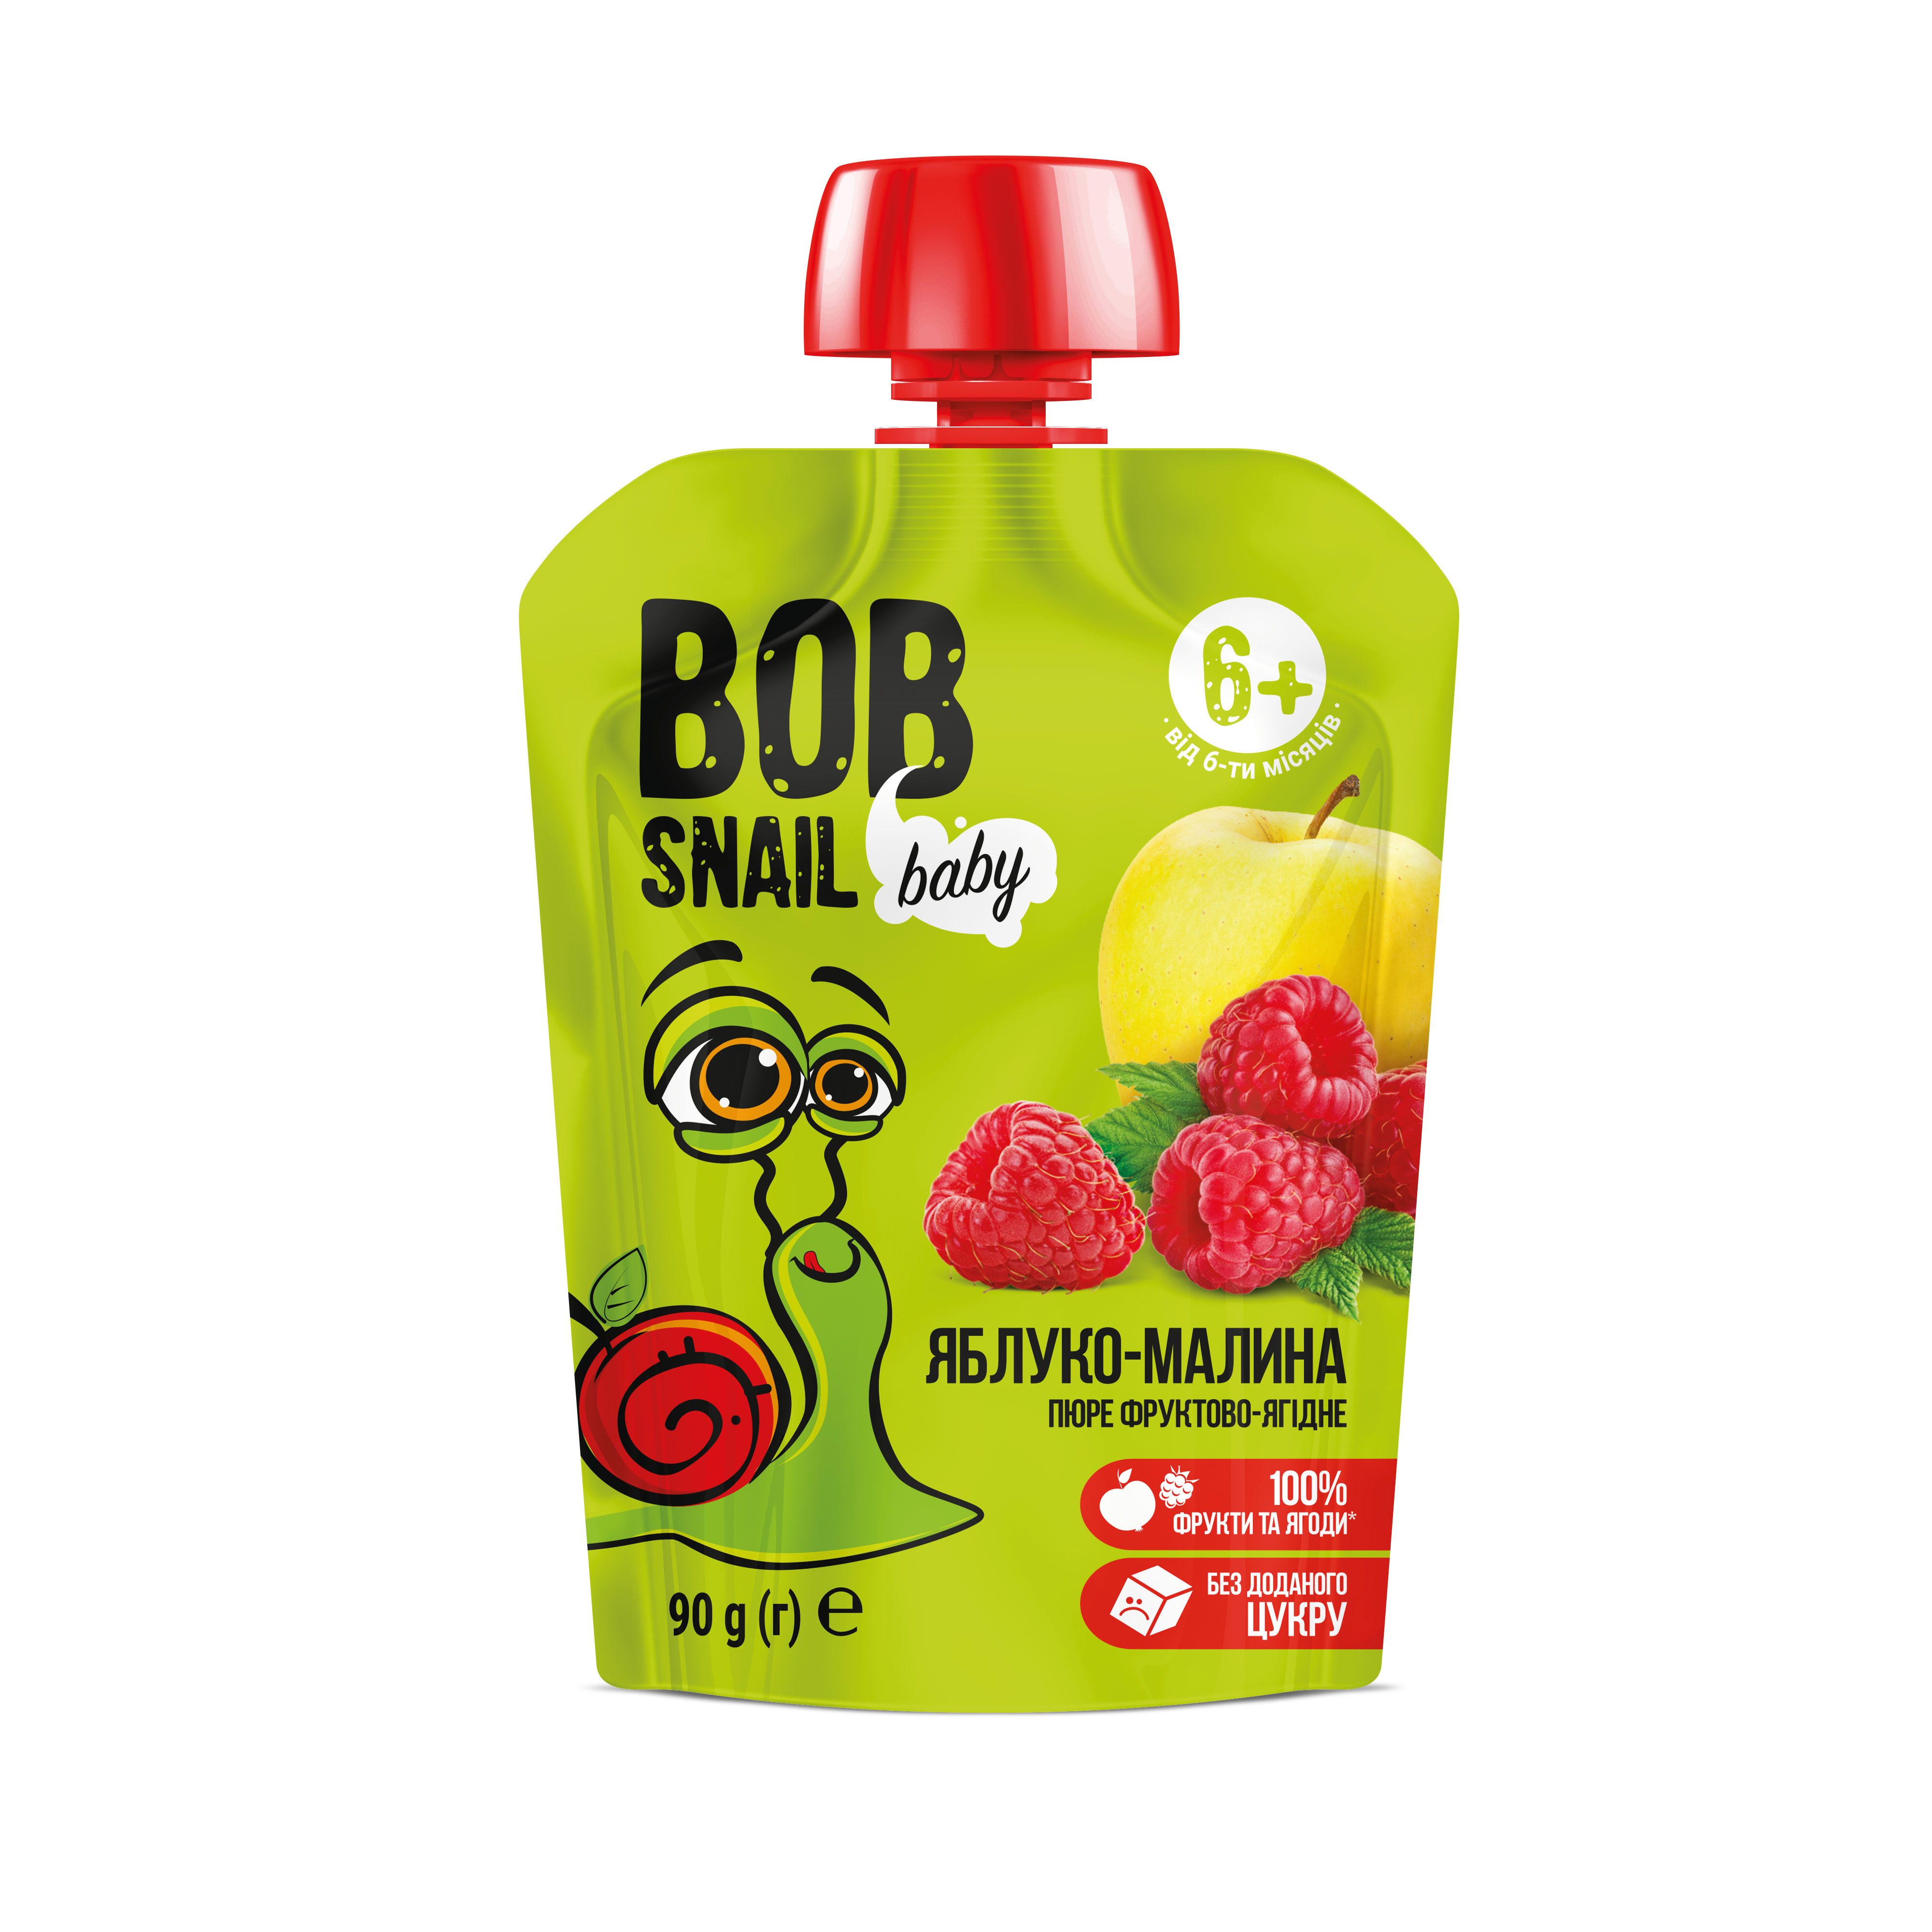 Пюре фруктовое Bob Snail Яблоко-Малина, гомогенизированное, 90 г (911679) - фото 1